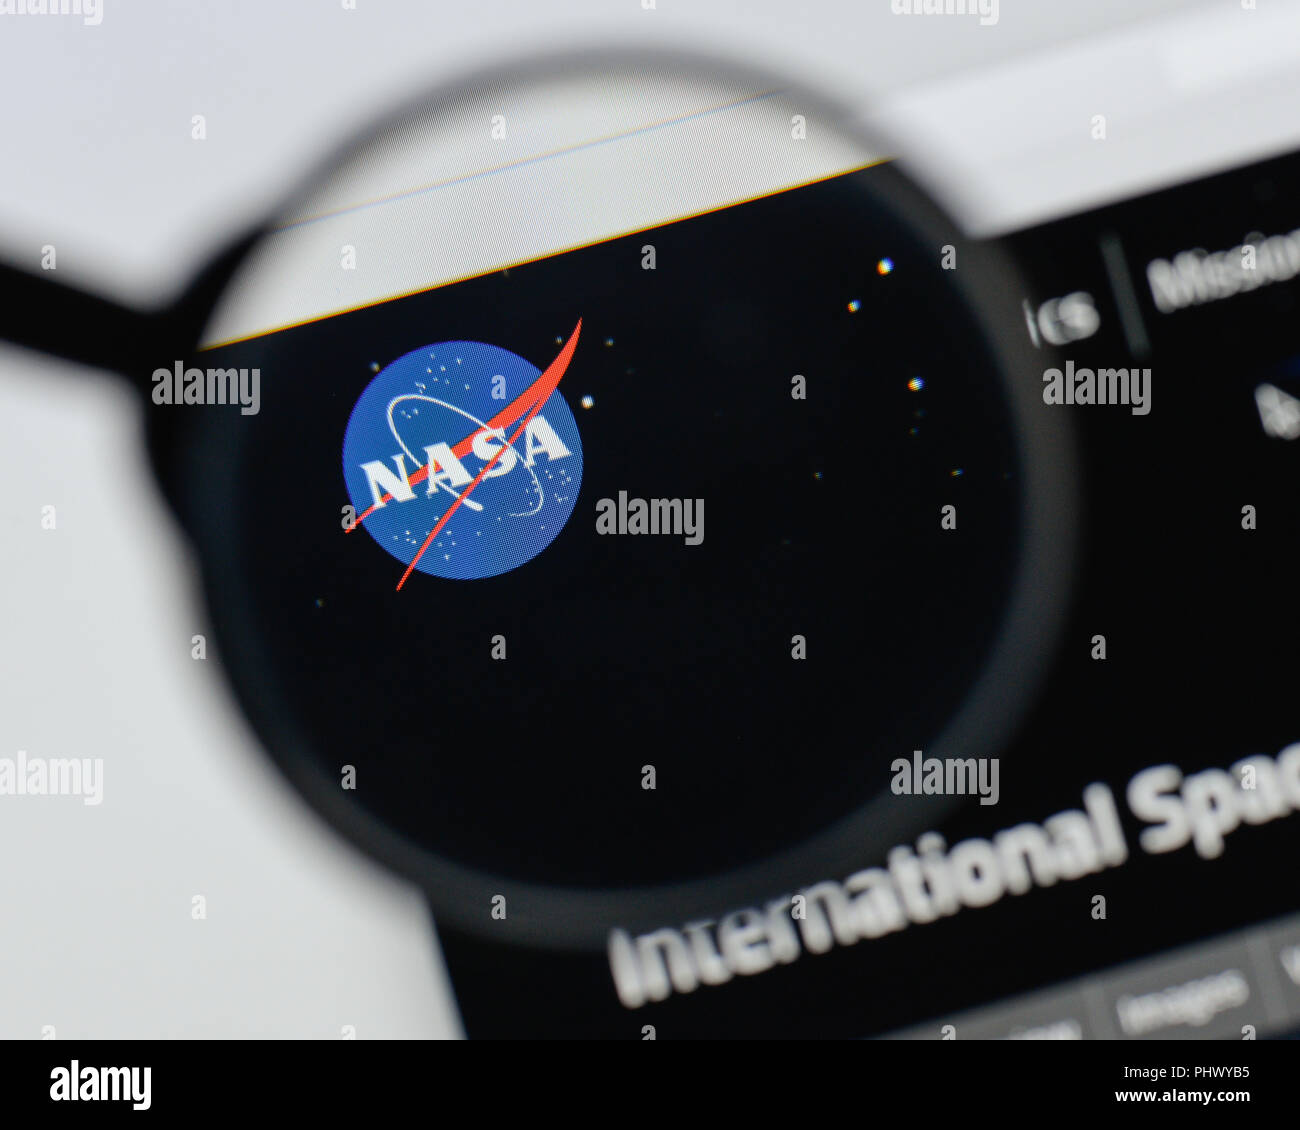 Milan, Italy - August 20, 2018: NASA website homepage. NASA logo visible. Stock Photo